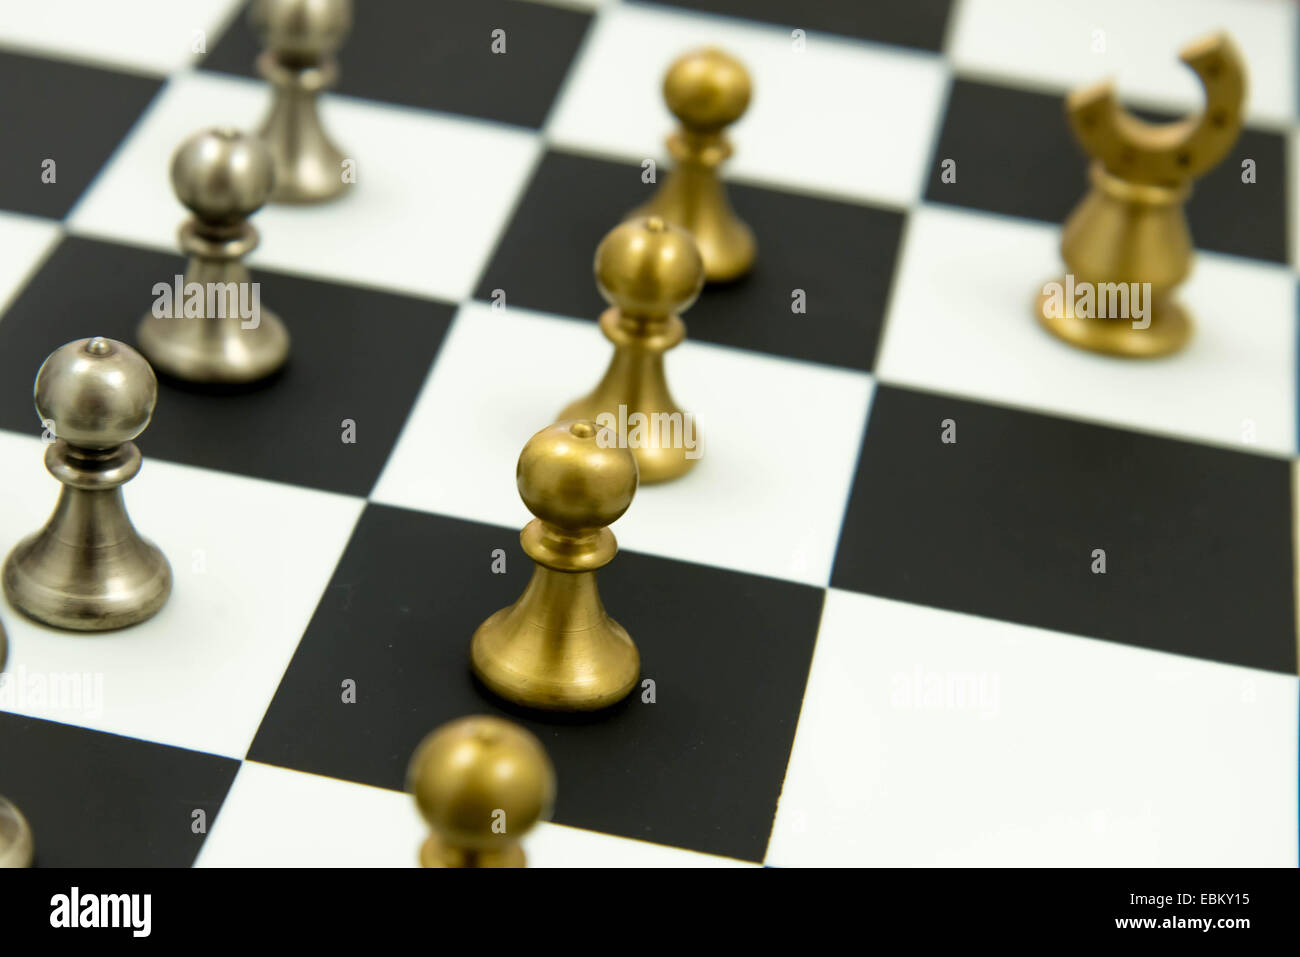 Jeu d'échecs classique - pièces en jeu sur l'échiquier Banque D'Images